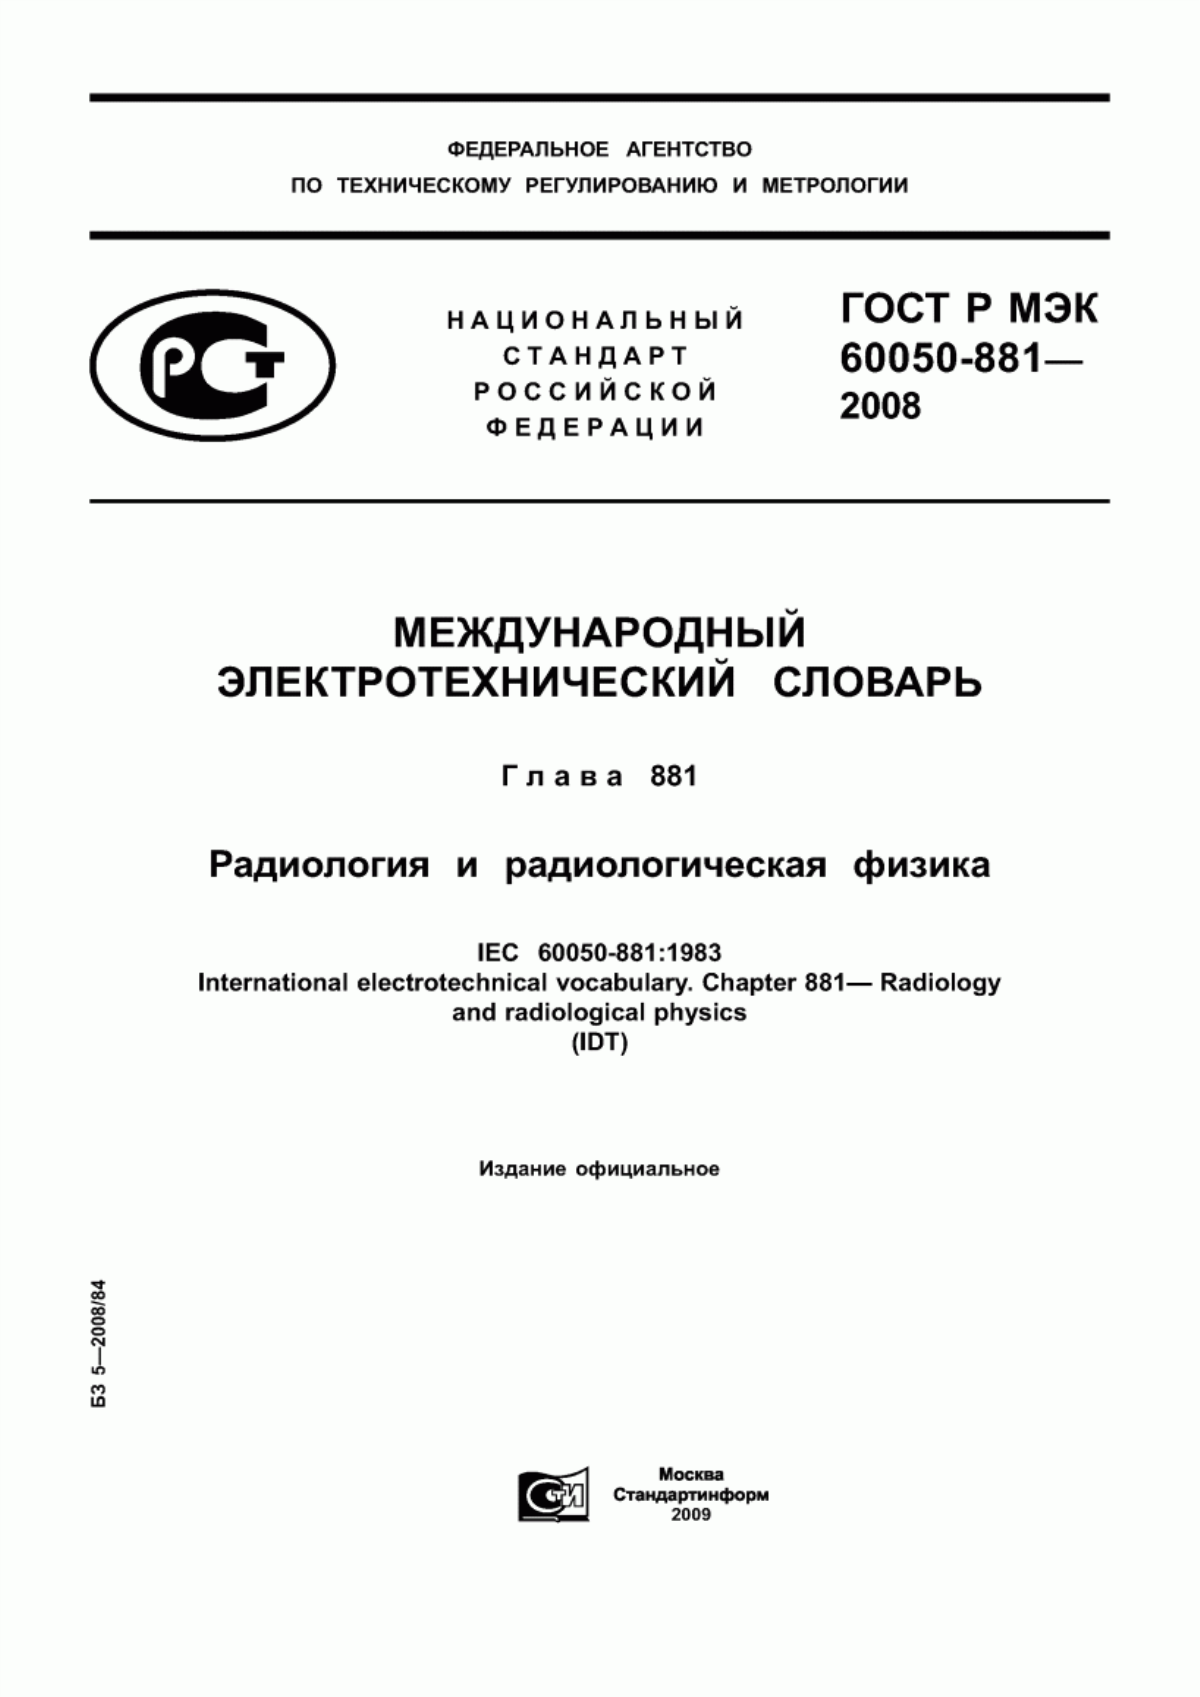 ГОСТ Р МЭК 60050-881-2008 Международный электротехнический словарь. Глава 881. Радиология и радиологическая физика